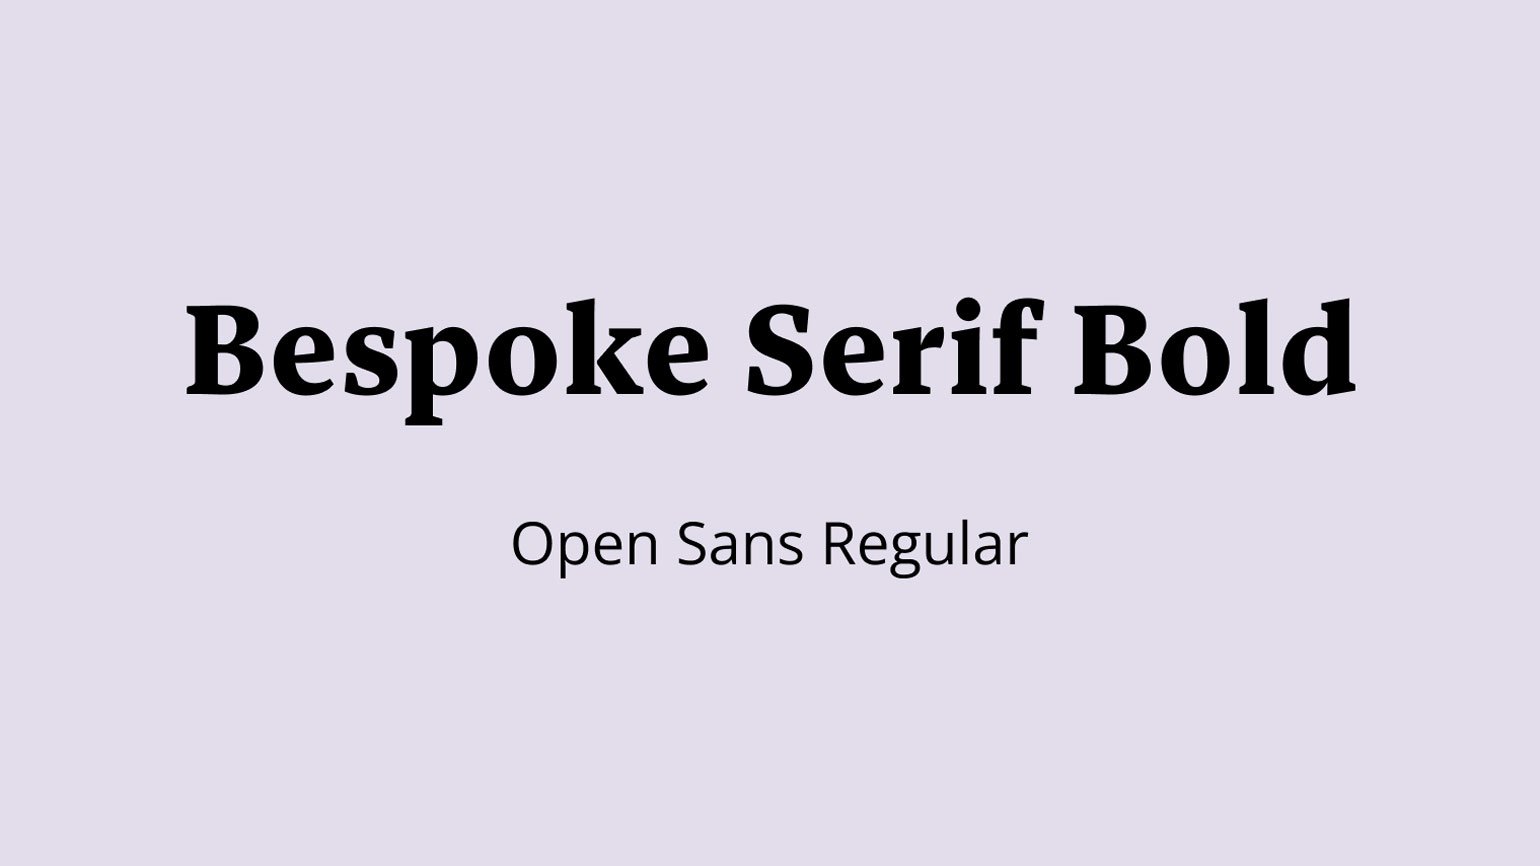 Шрифтовая пара Bespoke Serif Bold и Open Sans Regular.